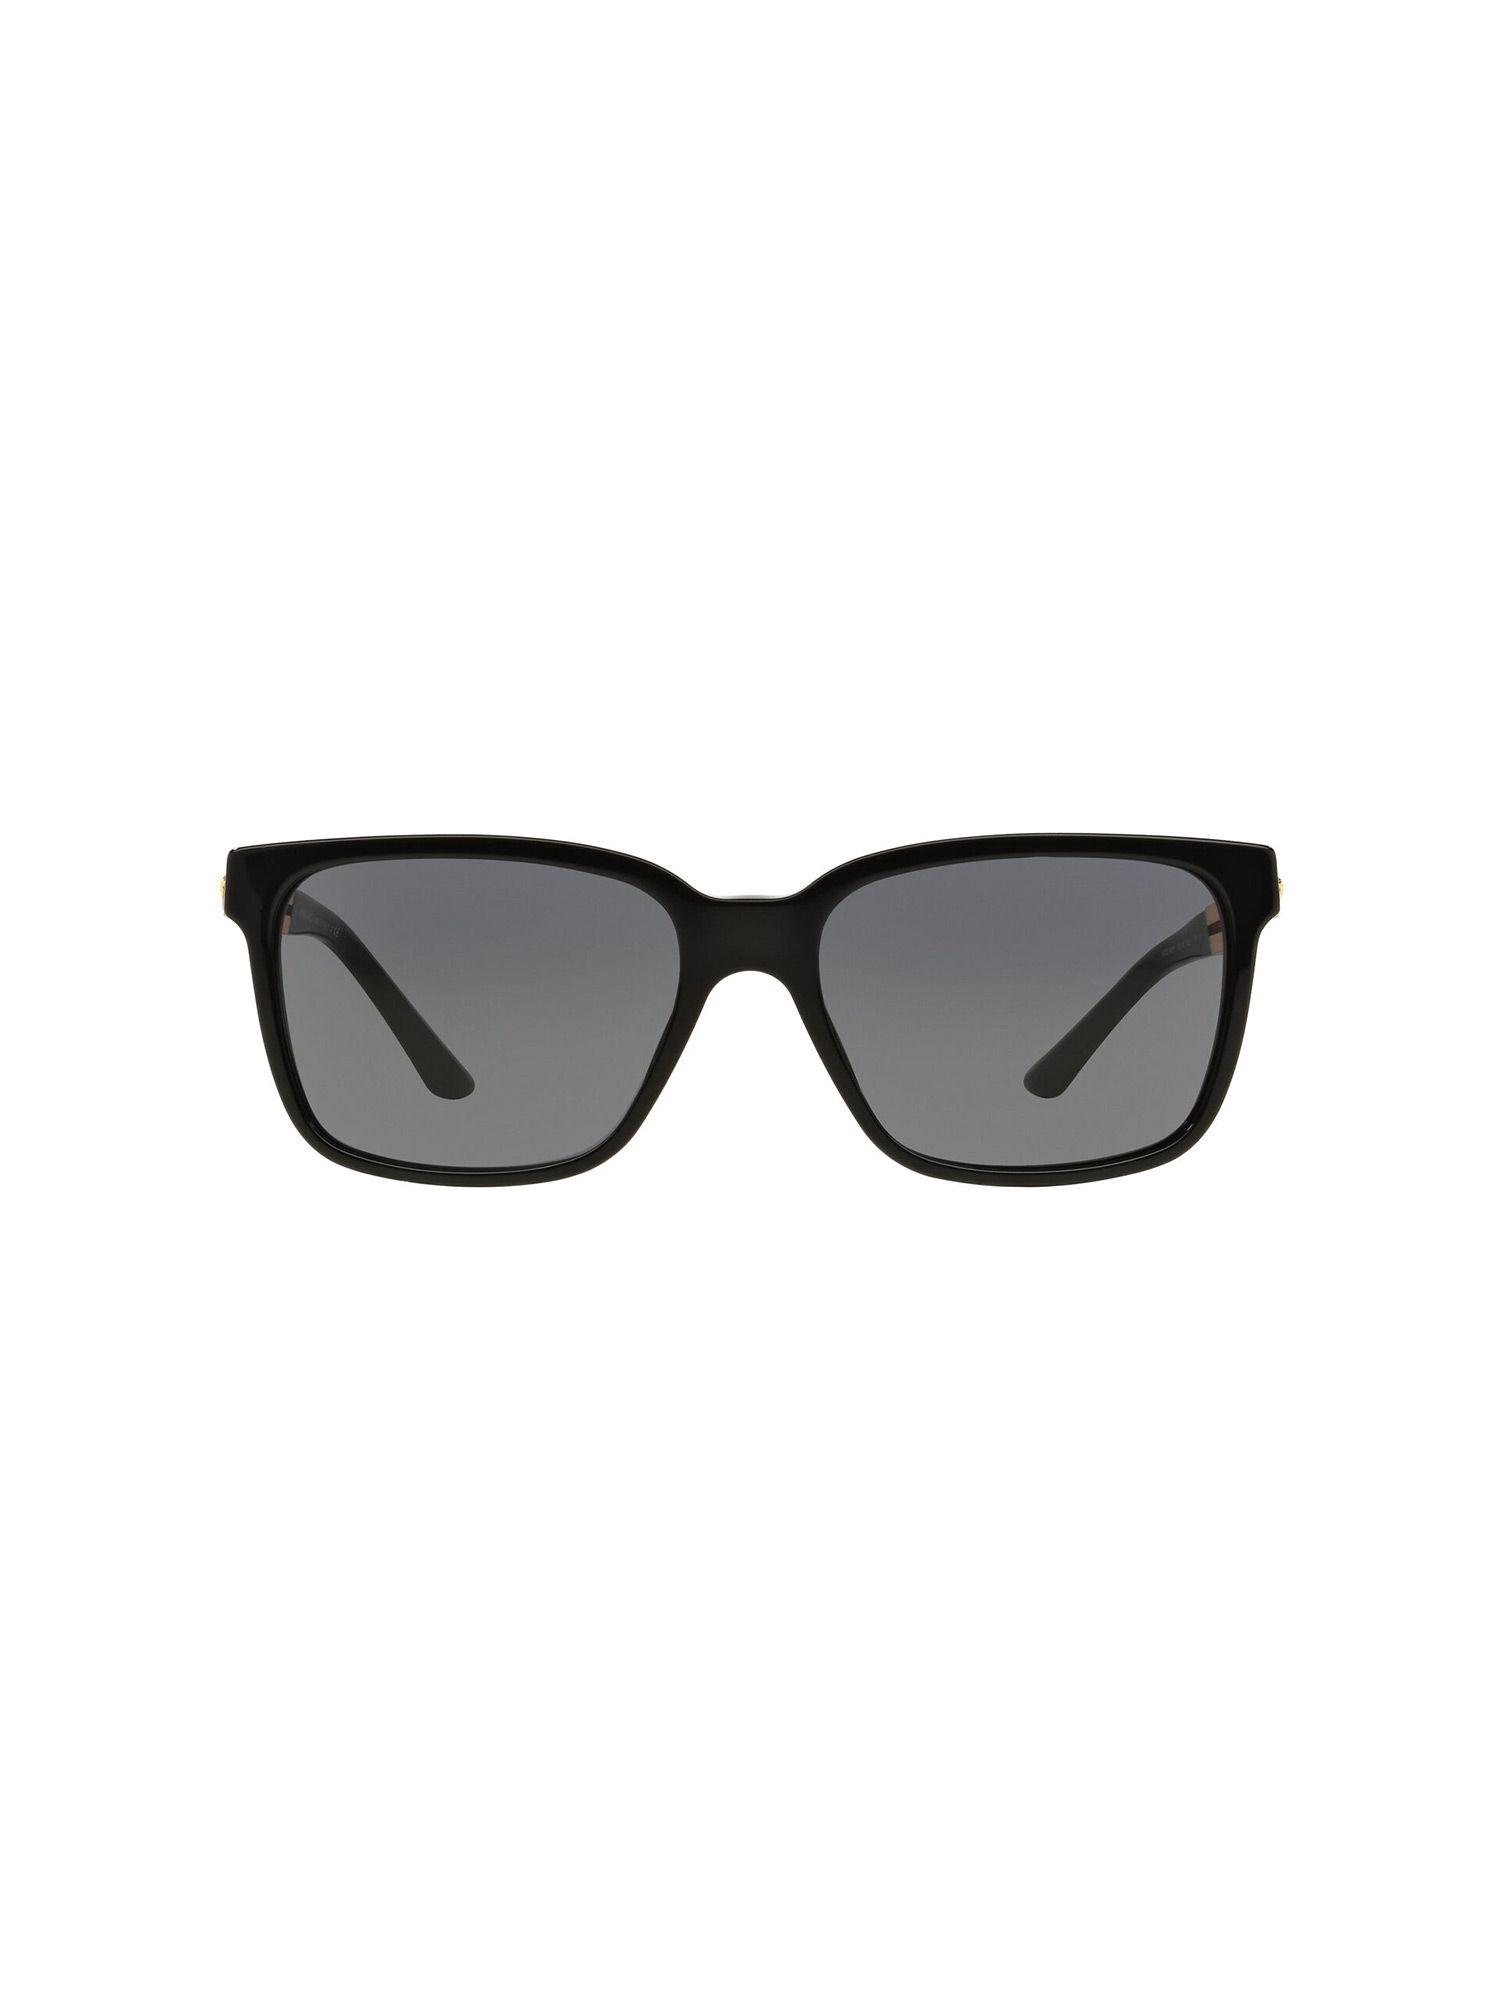 0VE4307 Vanitas Grey Lens Square Male Sunglasses